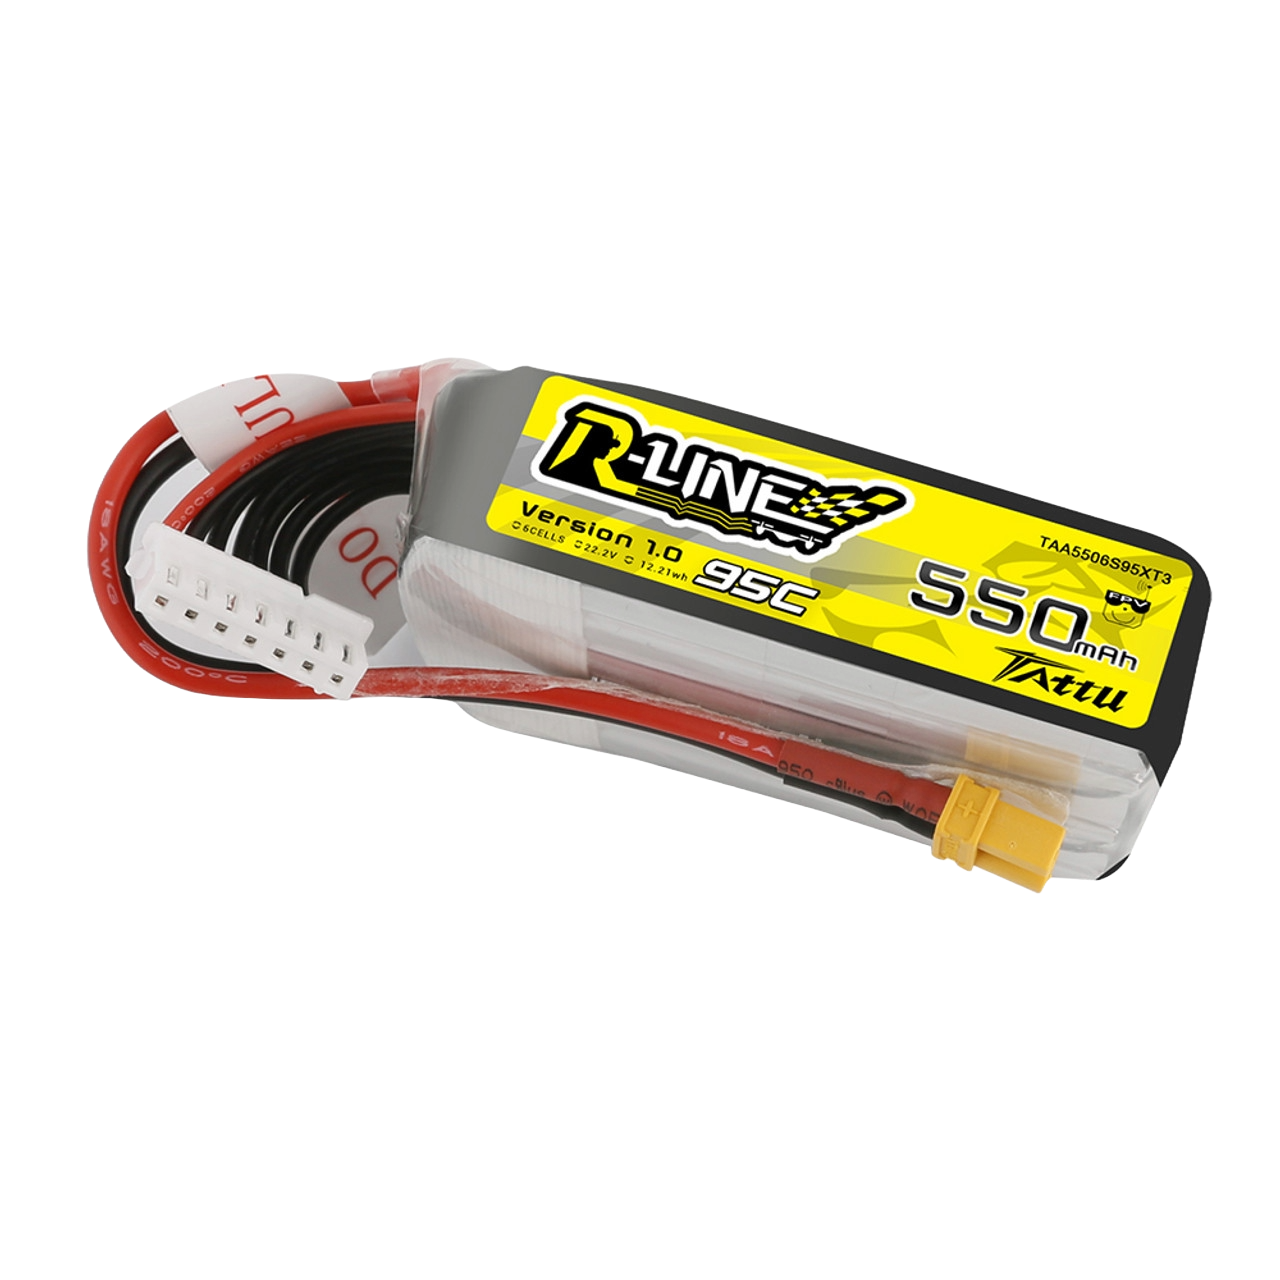 Tattu 550mAh 6S 95C 22.2V R-Line Lipo Battery Pack With XT30 Plug - DroneDynamics.ca